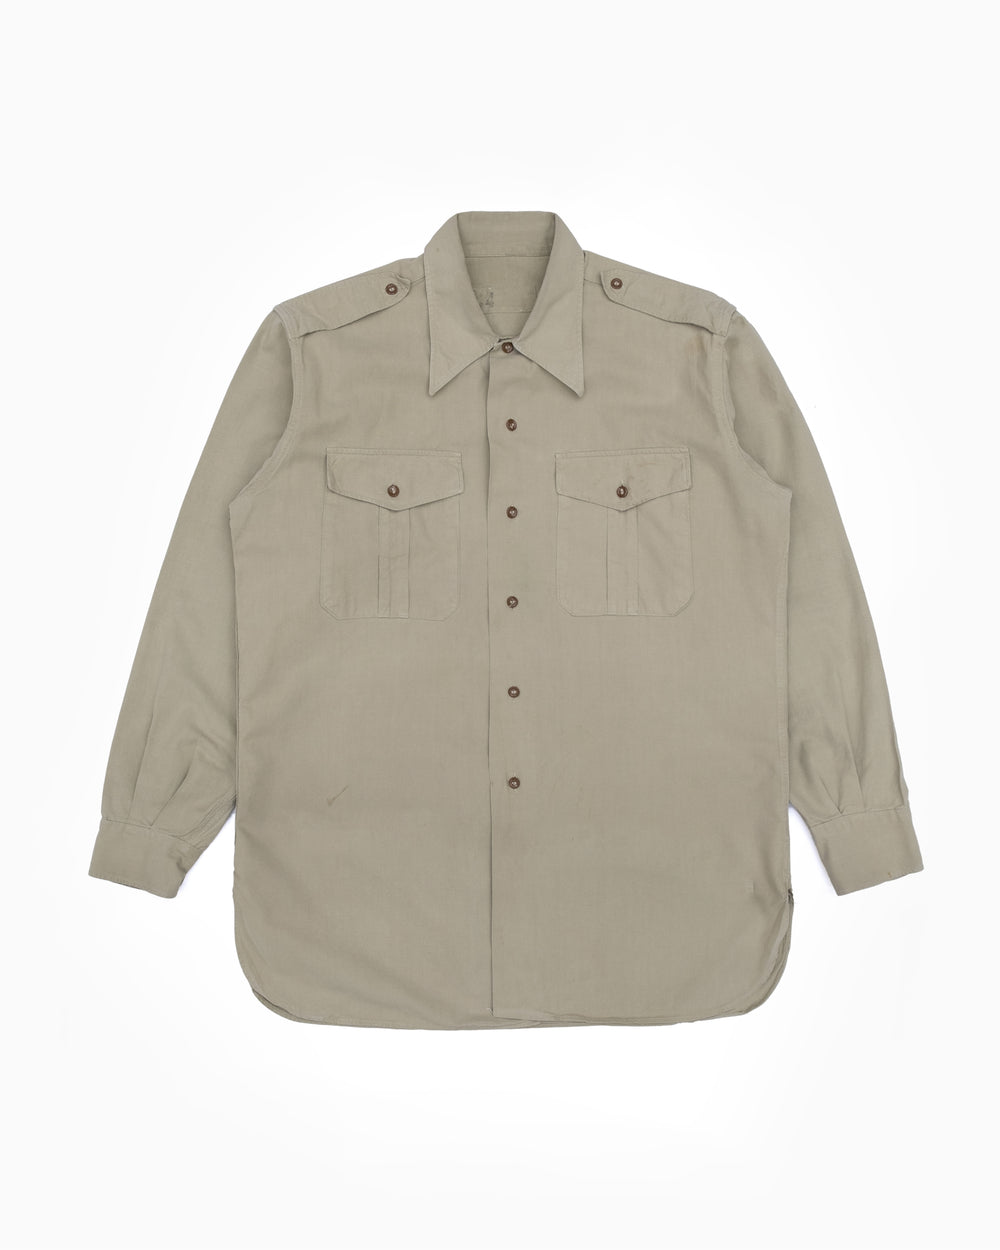 1960s French Army Camp Collar Safari Shirt